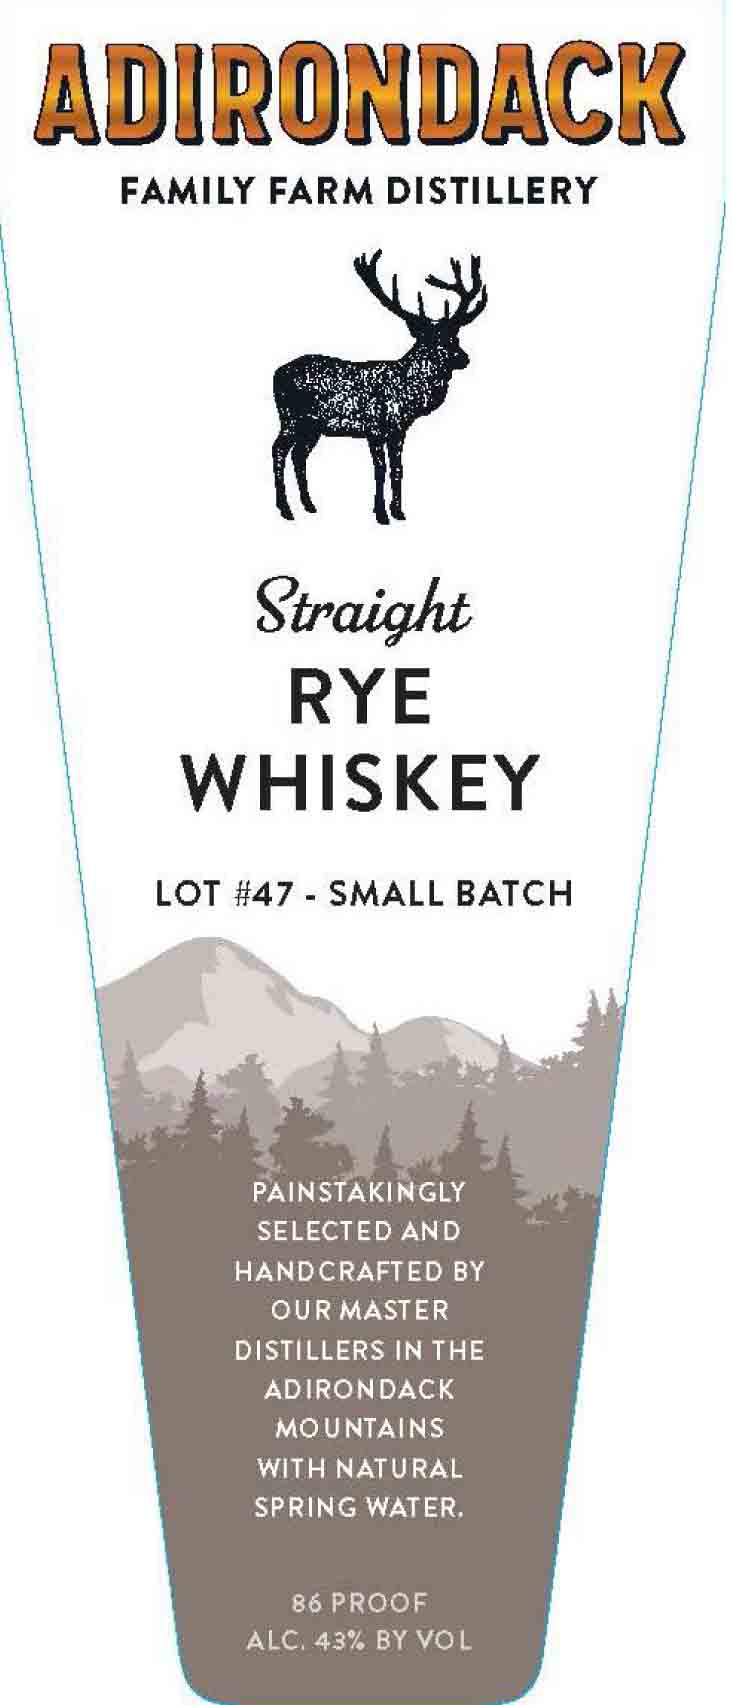 Adirondack - Straight Rye Whiskey label